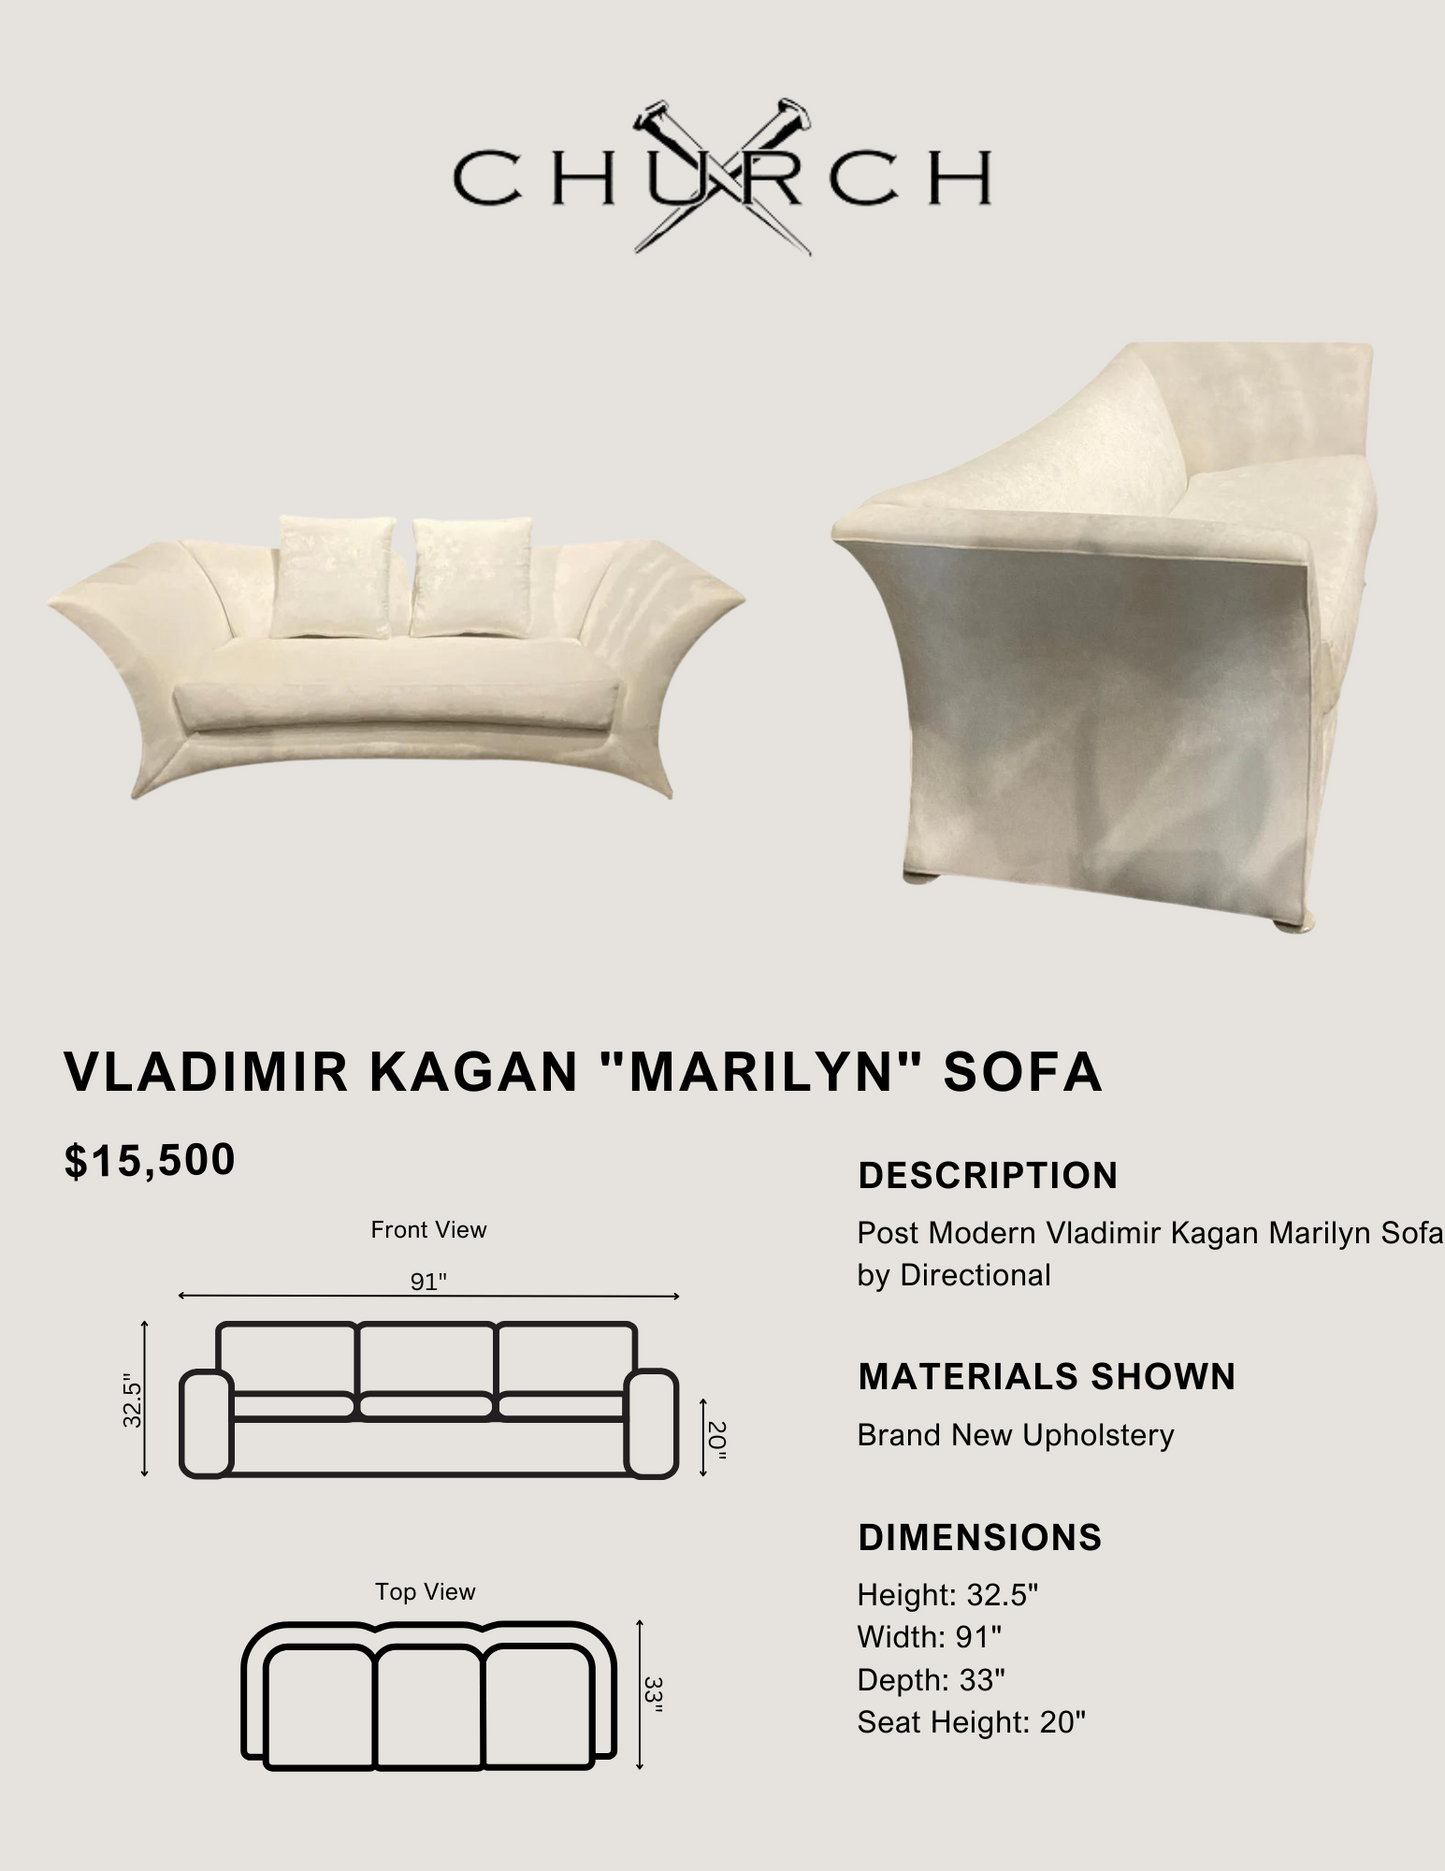 Vladimir Kagan "Marilyn" Sofa